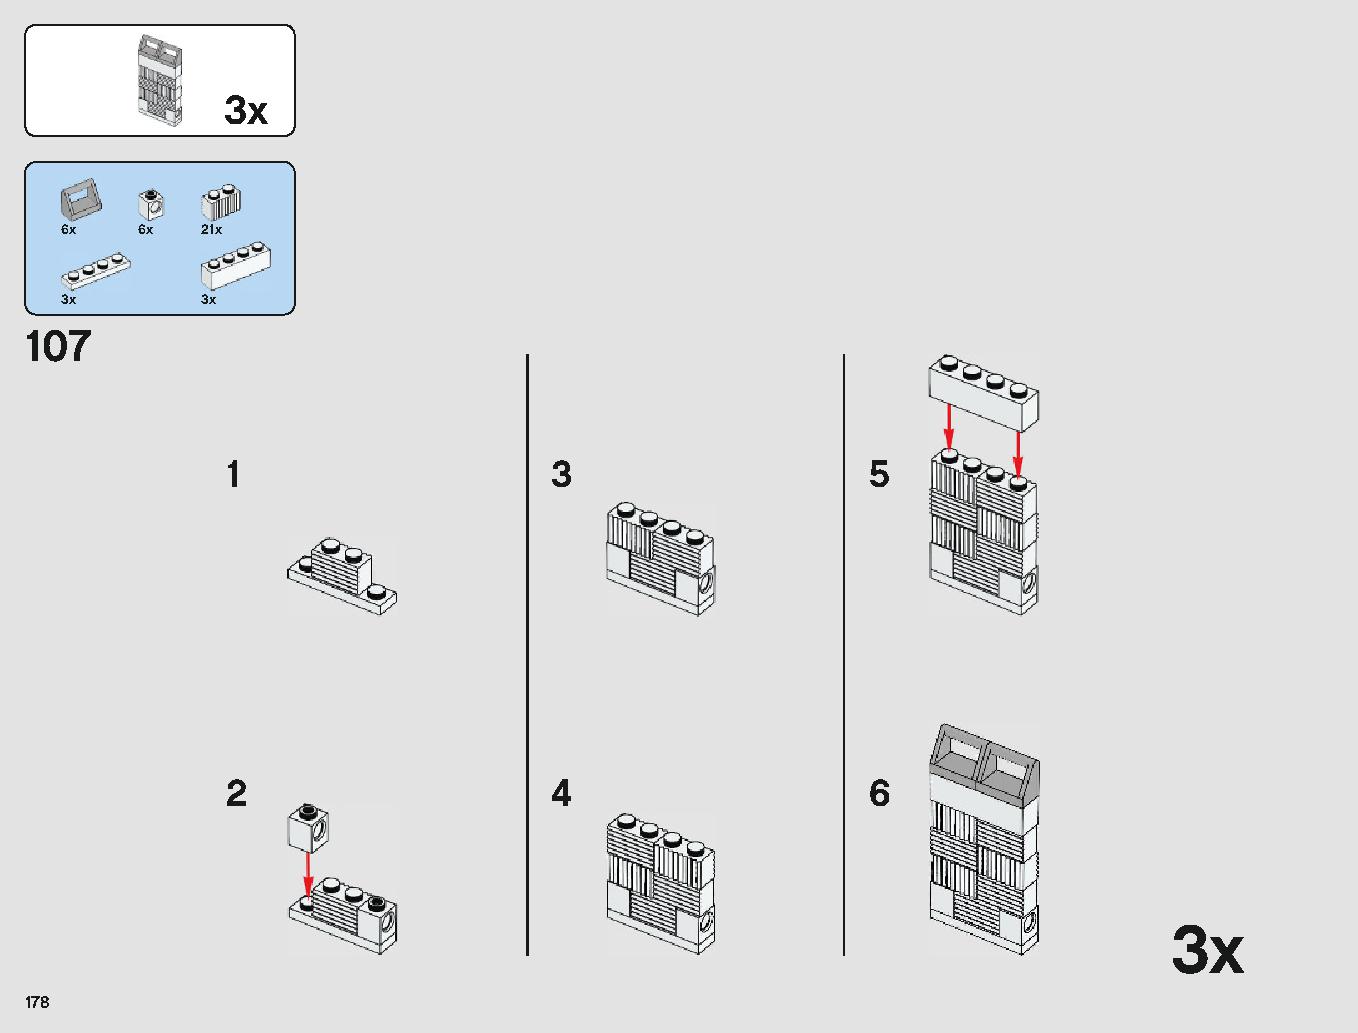 クラウド・シティ 75222 レゴの商品情報 レゴの説明書・組立方法 178 page